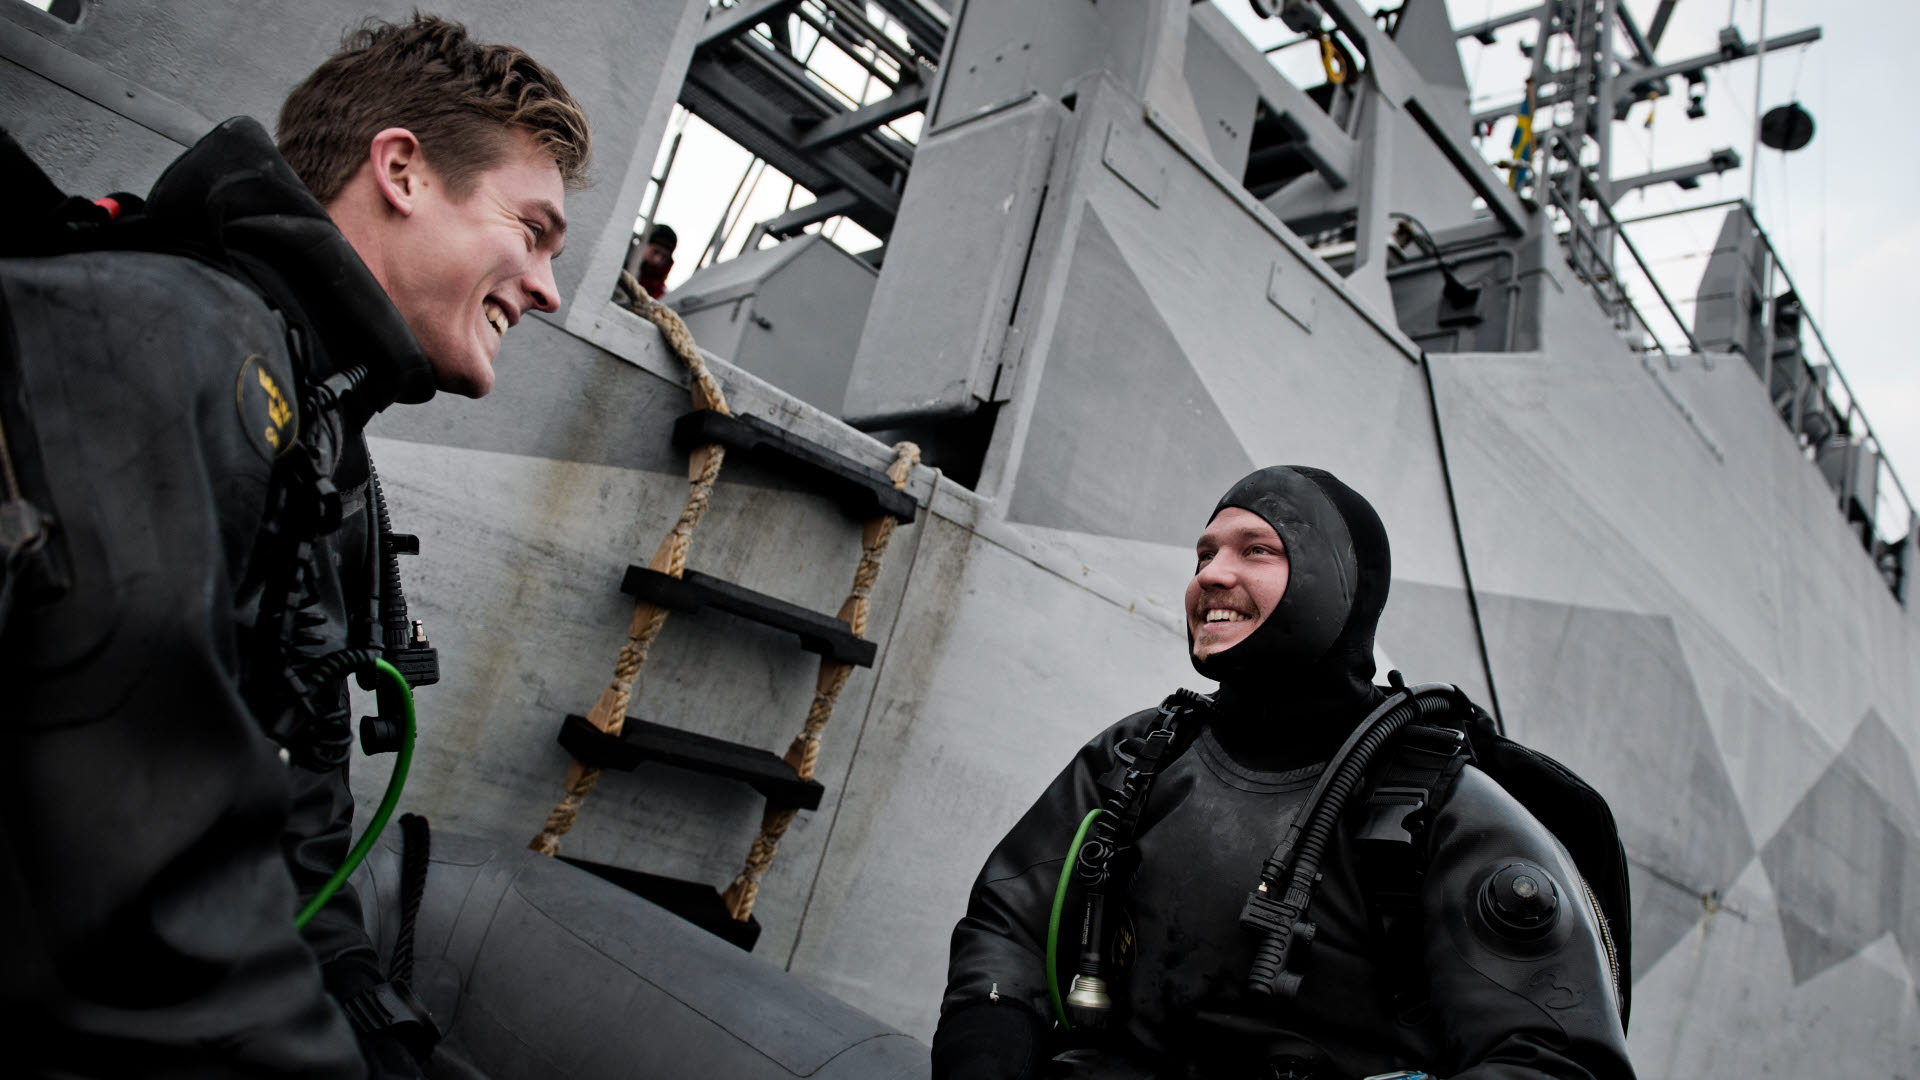 KARLSKRONA 20141204

Röjdykare ur 33. Minröjningsdivisionen på HMS Sturkö. 
HMS Sturkö HMS Sturkö, M14, är ett minröjningsfartyg av Spåröklass. Bemanningen består av nio officerare, fyra sjömän och fyra röjdykare.
33. Minröjningsdivisionen tillhör Tredje sjöstridsflottiljen som är ett svenskt marint insatsförband inom Försvarsmakten. Förbandets stab är förlagt till Karlskrona i Blekinge.
